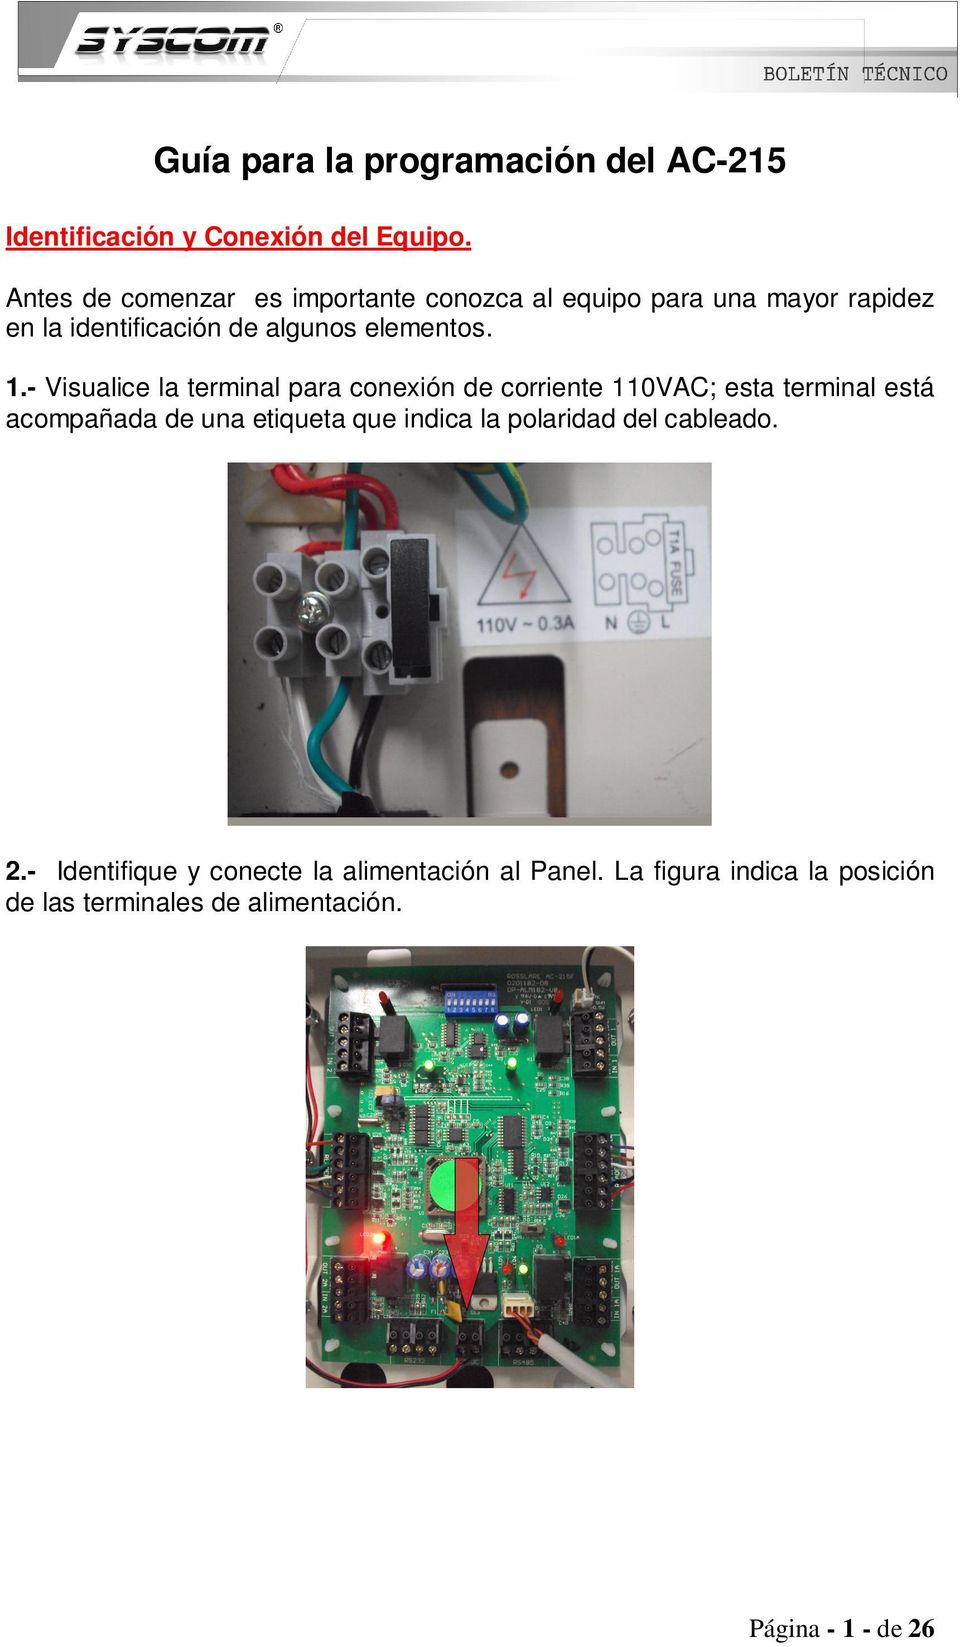 - Visualice la terminal para conexión de corriente 110VAC; esta terminal está acompañada de una etiqueta que indica